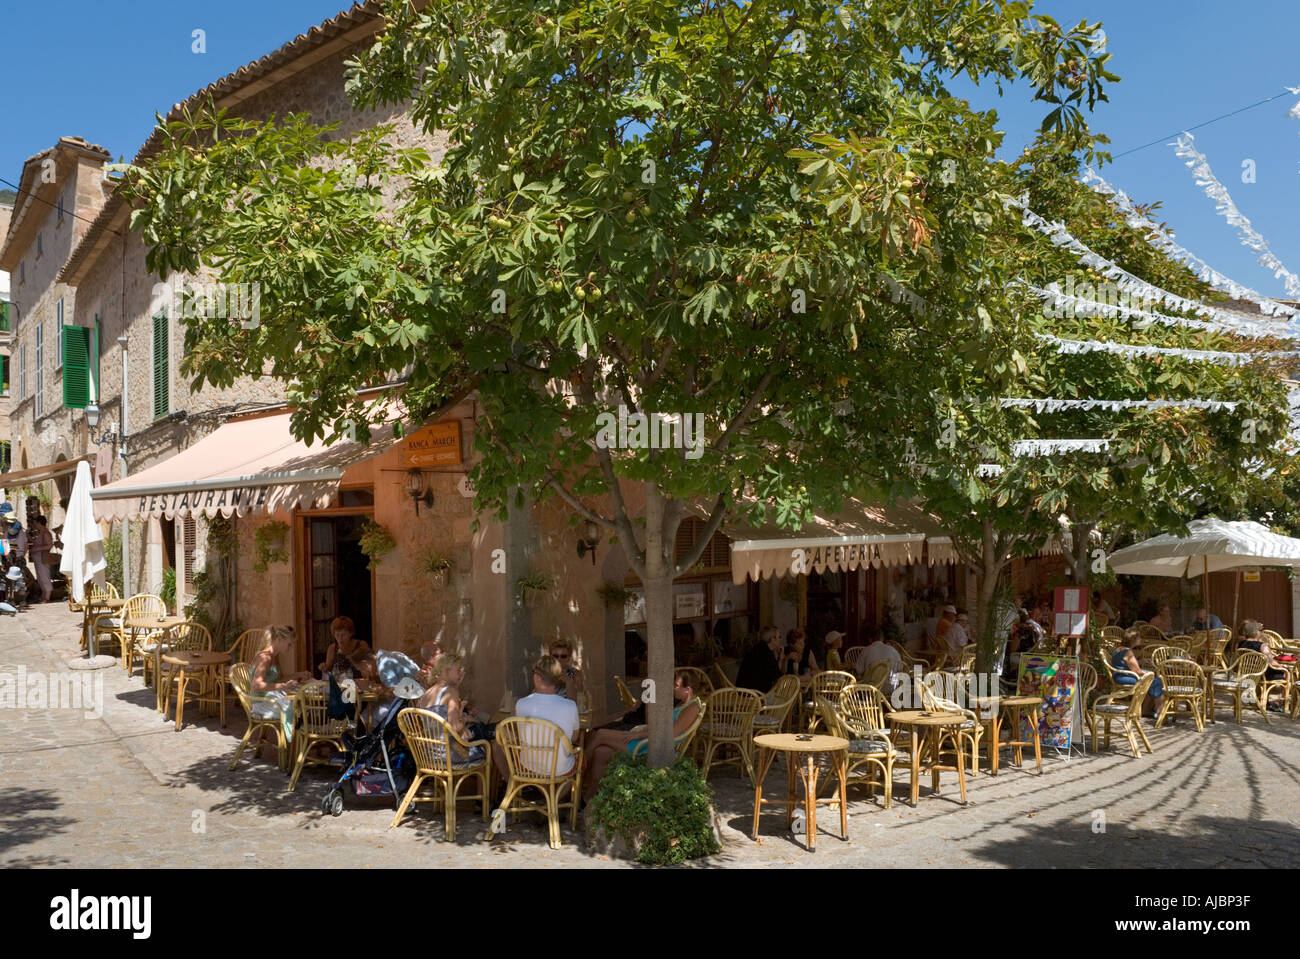 Cafe de l'ancien centre ville, Valldemossa, côte ouest, Mallorca, Espagne Banque D'Images